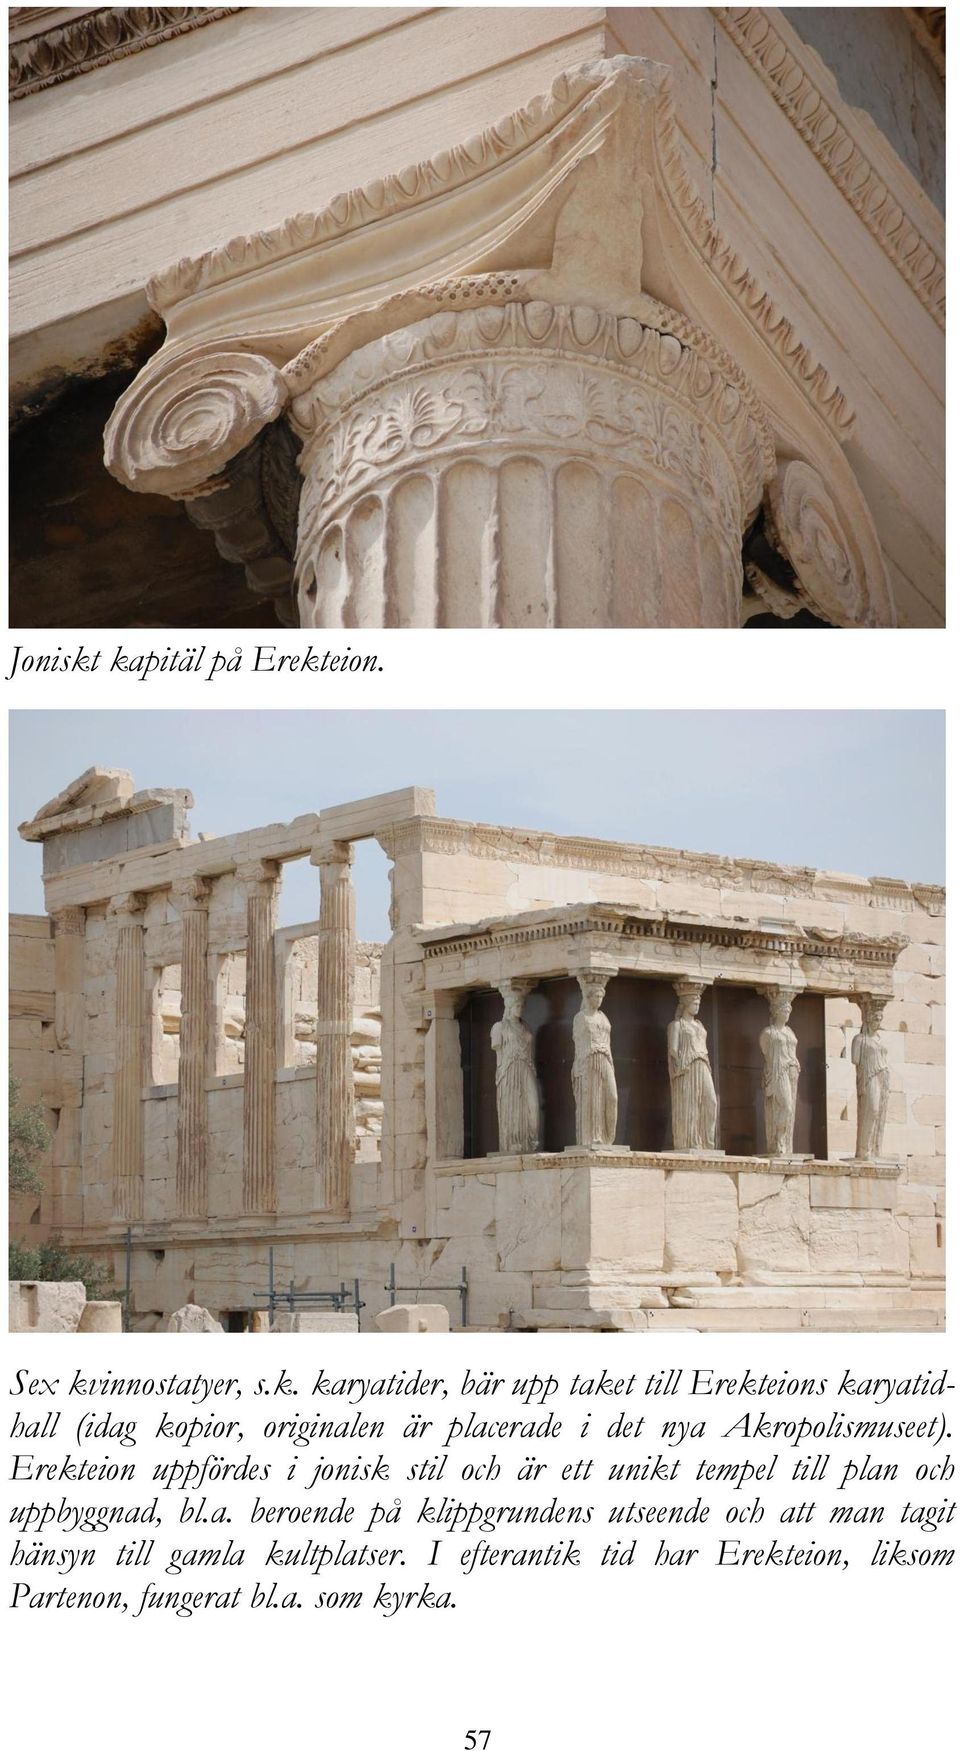 kopior, originalen är placerade i det nya Akropolismuseet).